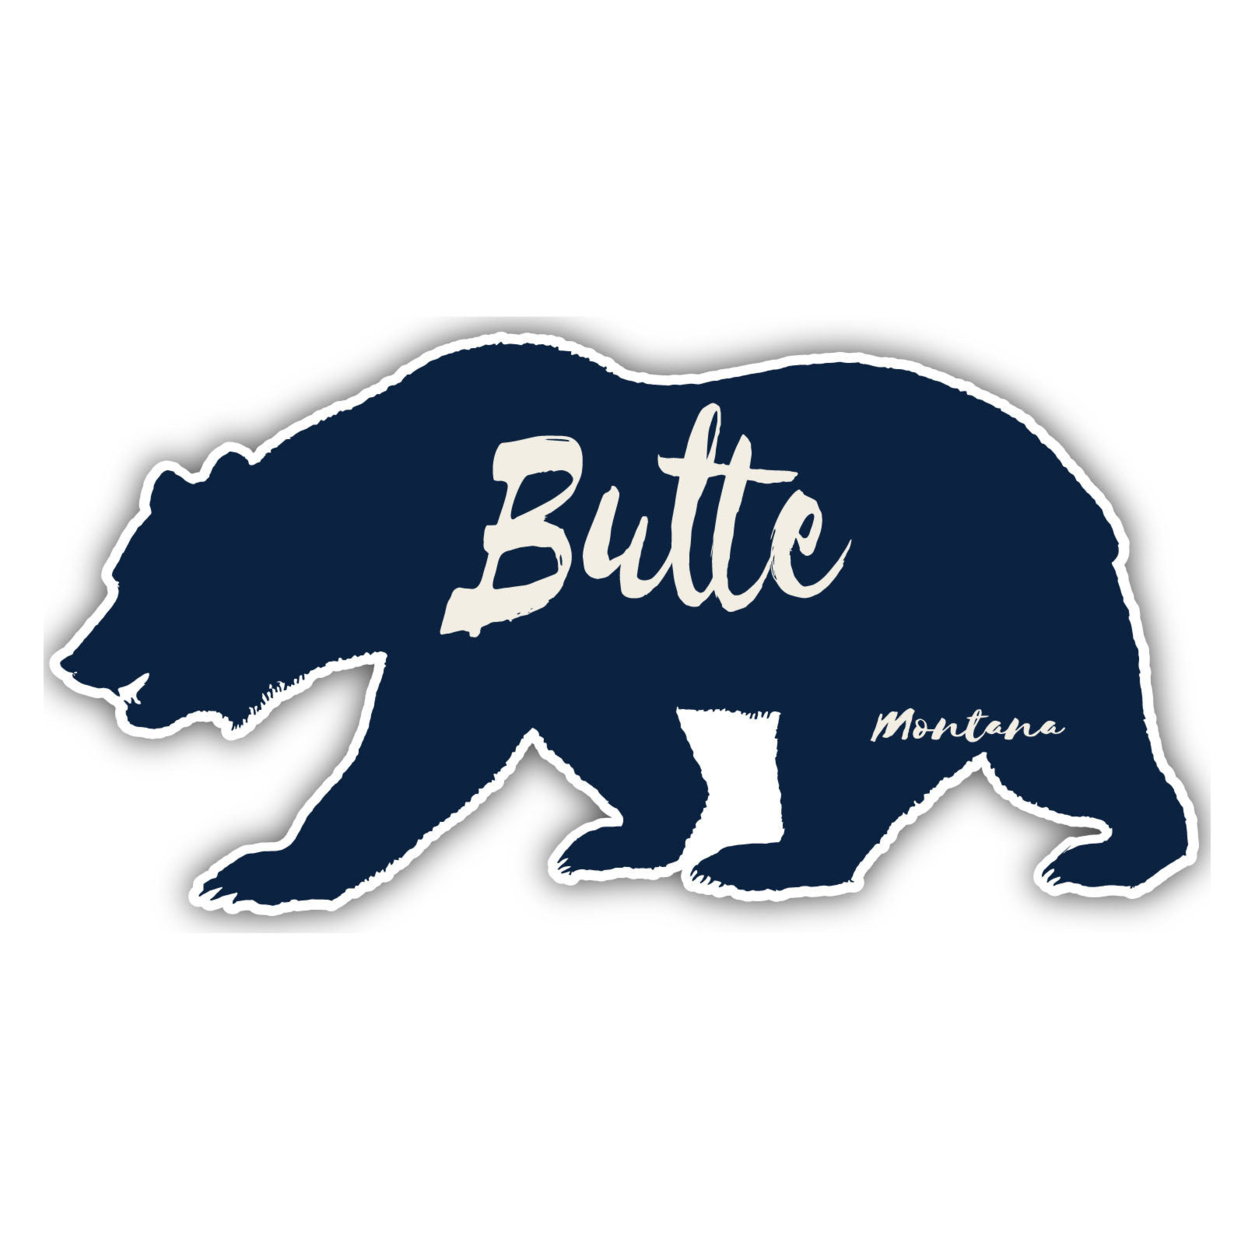 Butte Montana Souvenir Decorative Stickers (Choose Theme And Size) - Single Unit, 10-Inch, Tent